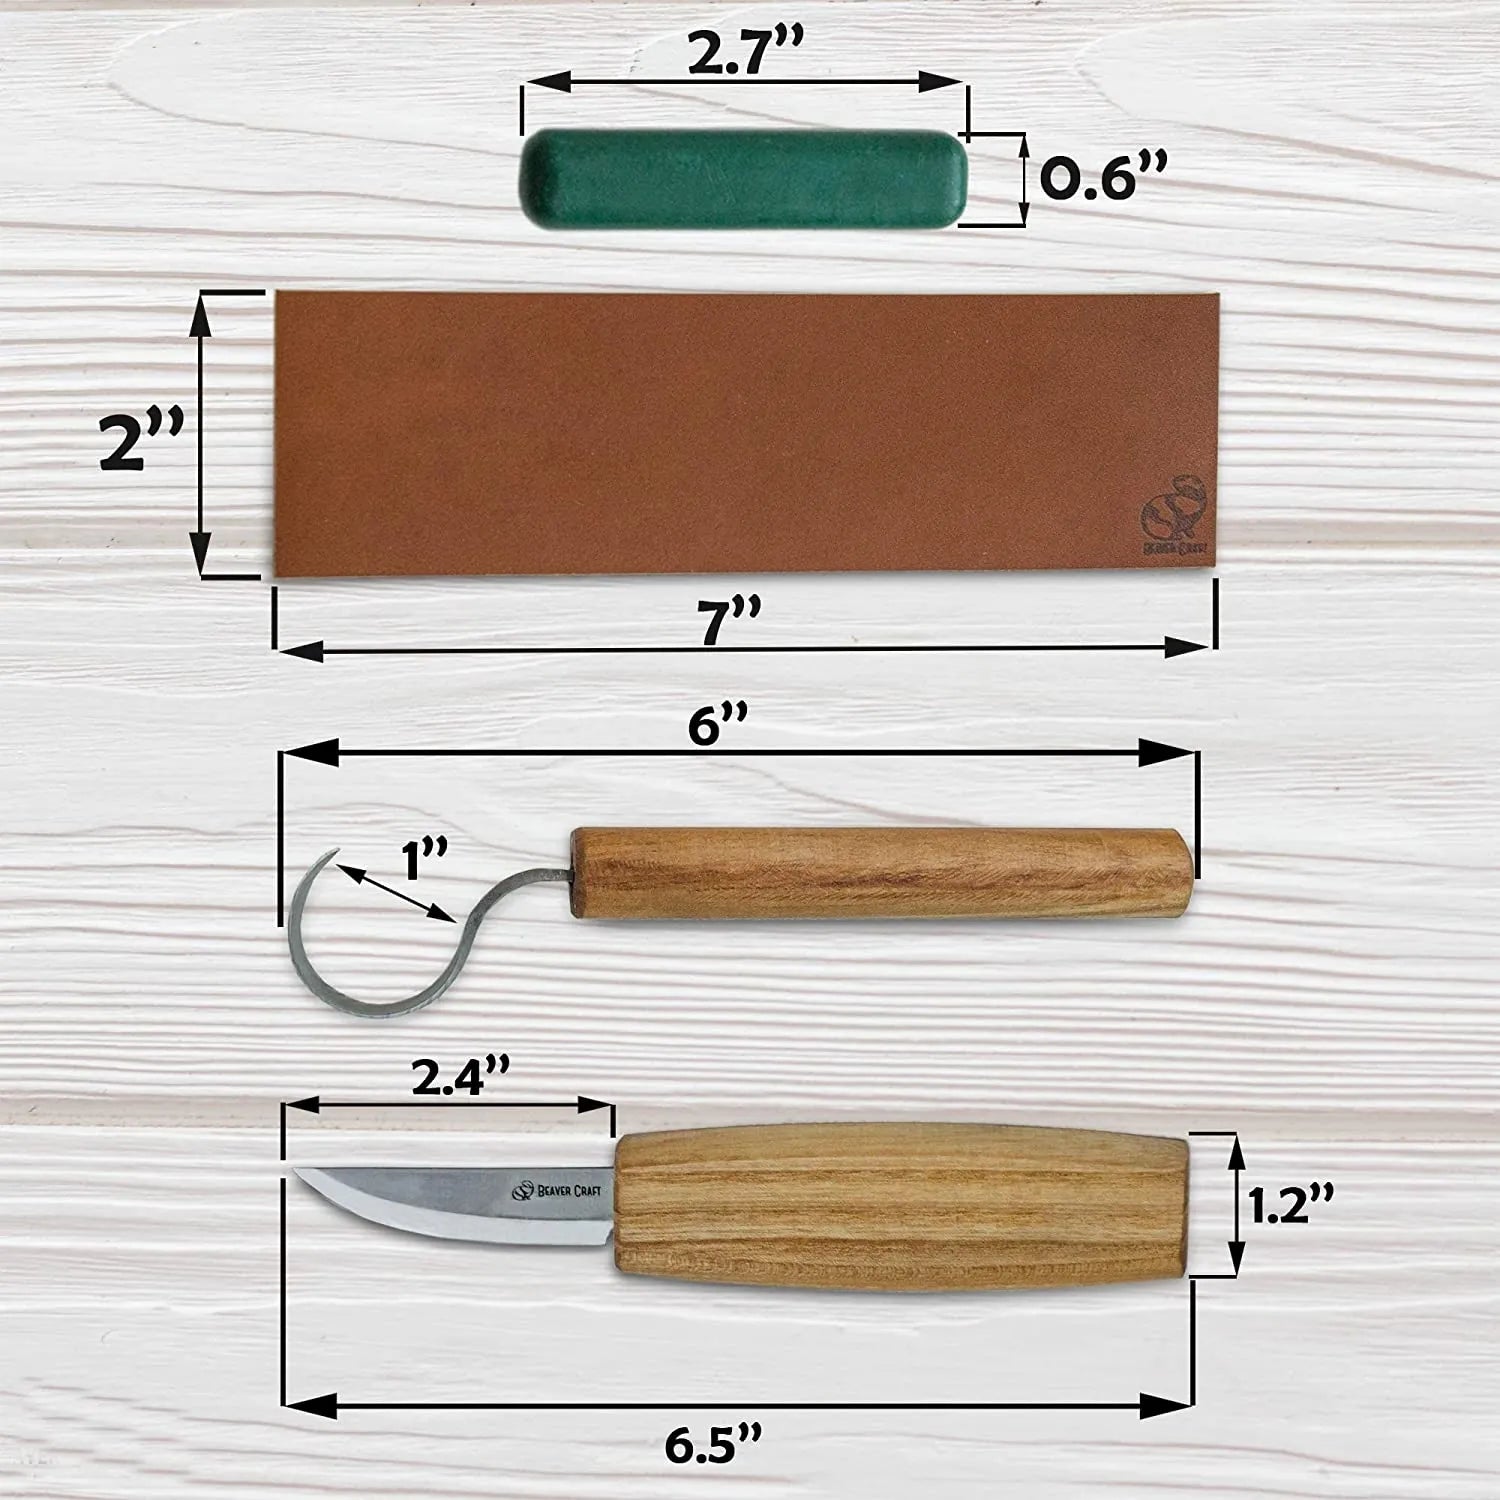 BeaverCraft Hook Knife Wood Carving SK1S Spoon Carving Knife with Leather  Sheath - Wood Carving Hook Knife - Spoon Bowl Carving Tools - Wood Carving  Tools for Beginner and Profi Whittling Knives